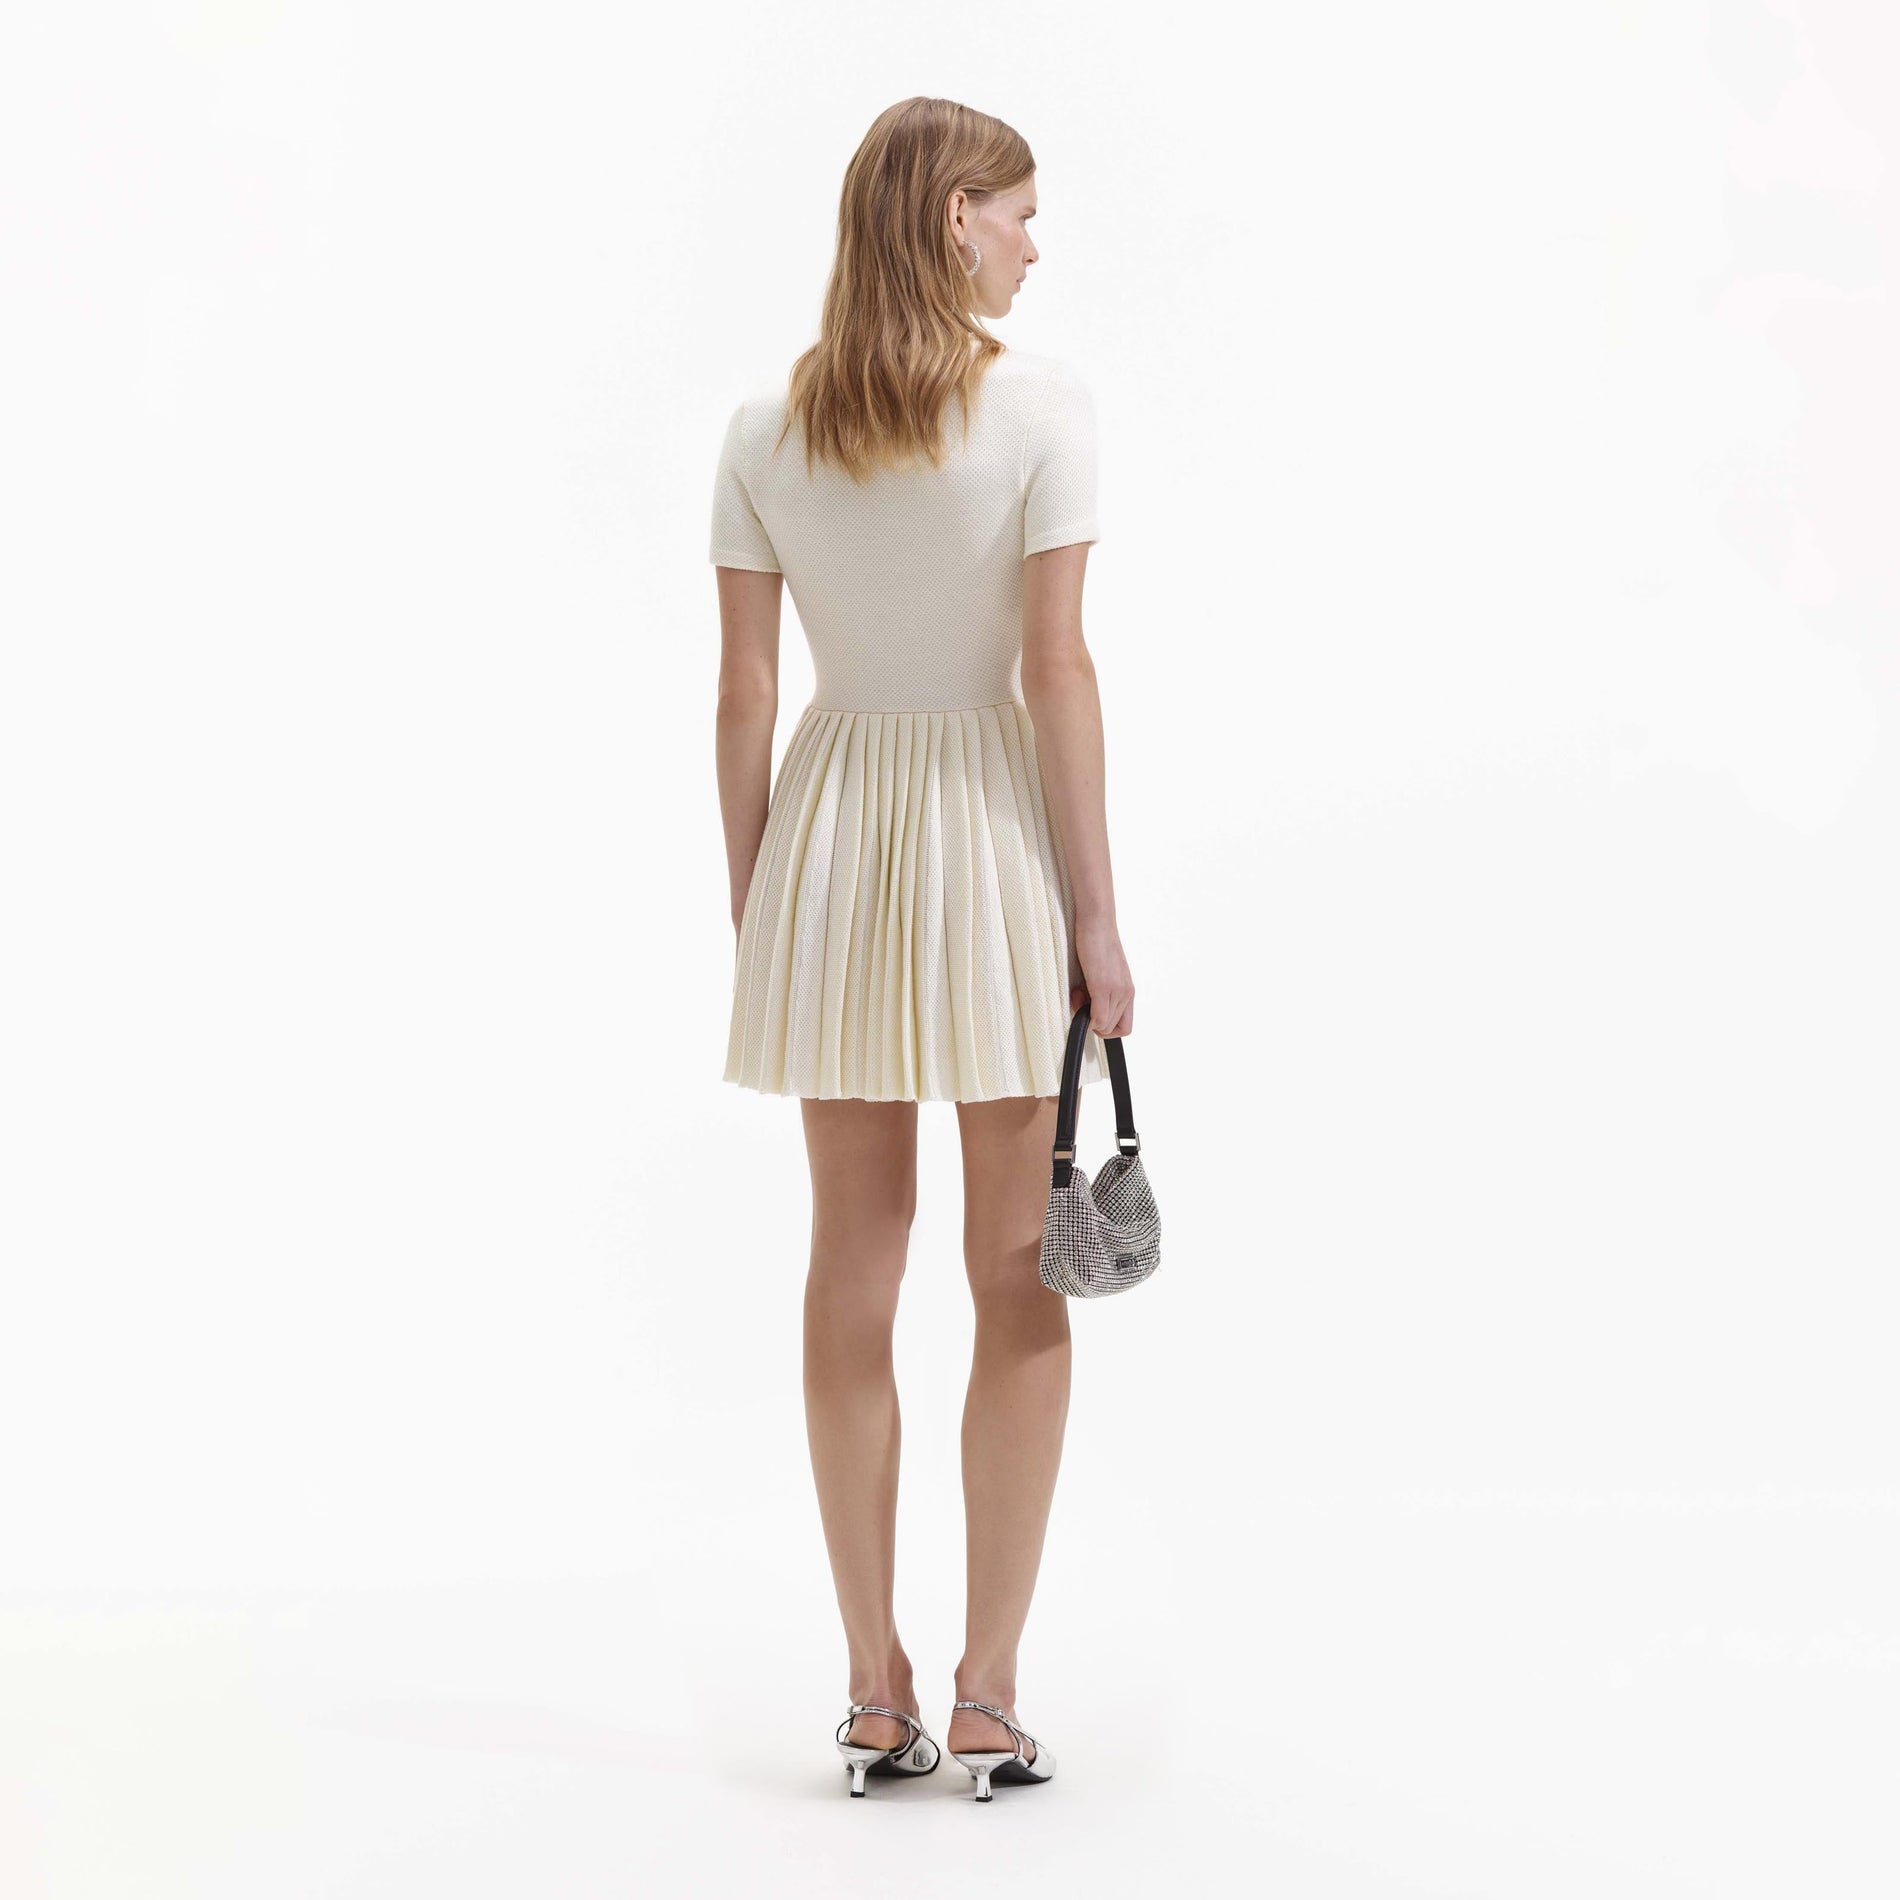 Cream Knit Mini Dress